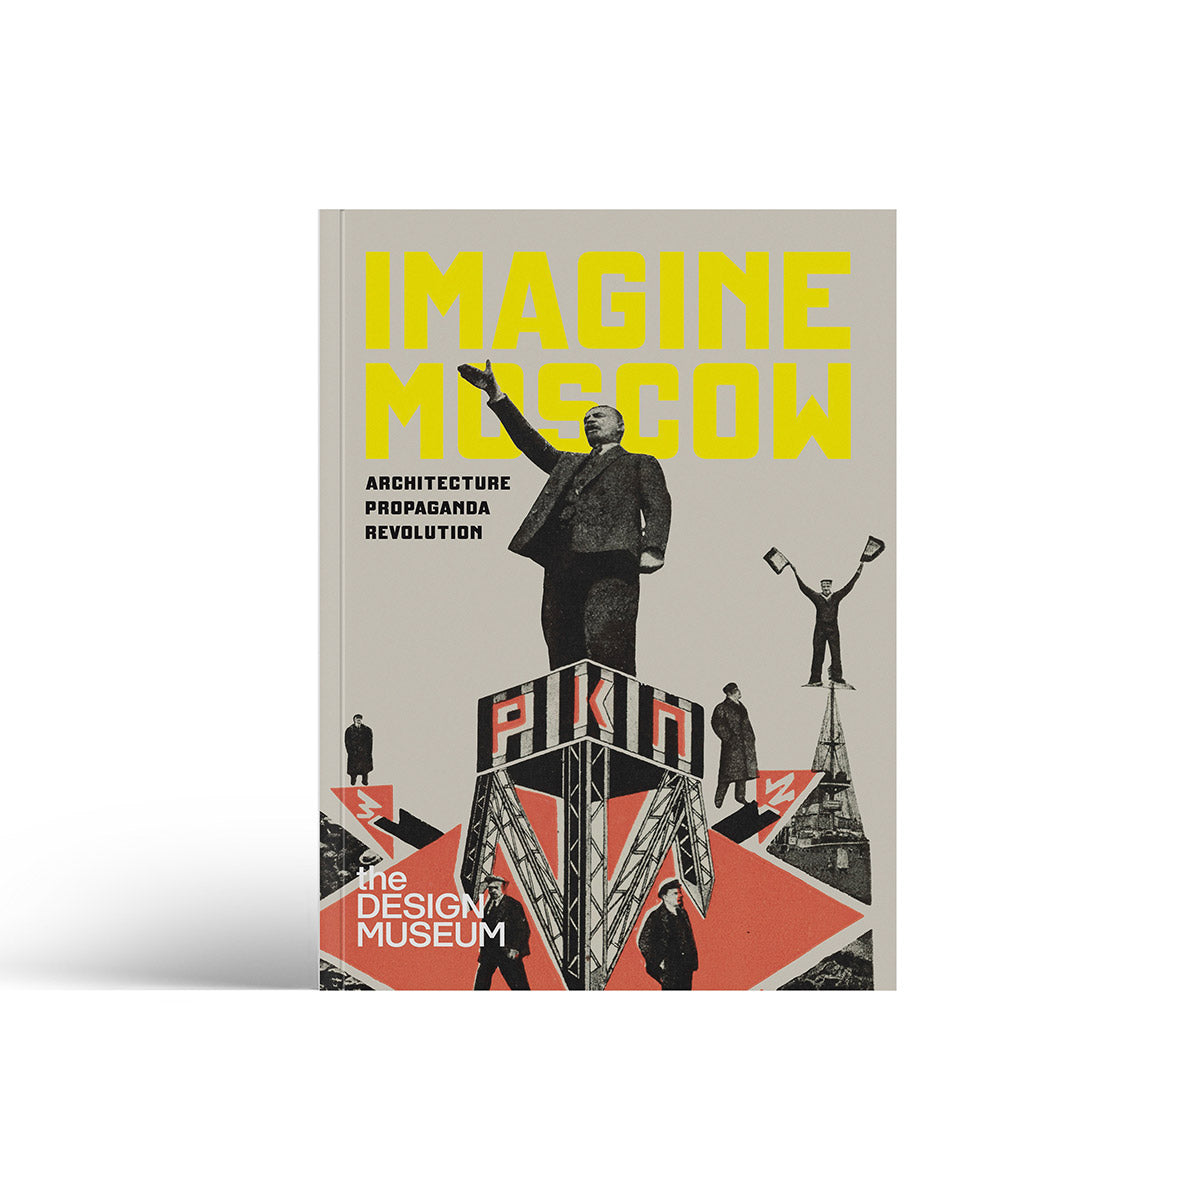 Imagine Moscow: Architecture, Propaganda, Revolution - Exhibition Catalogue